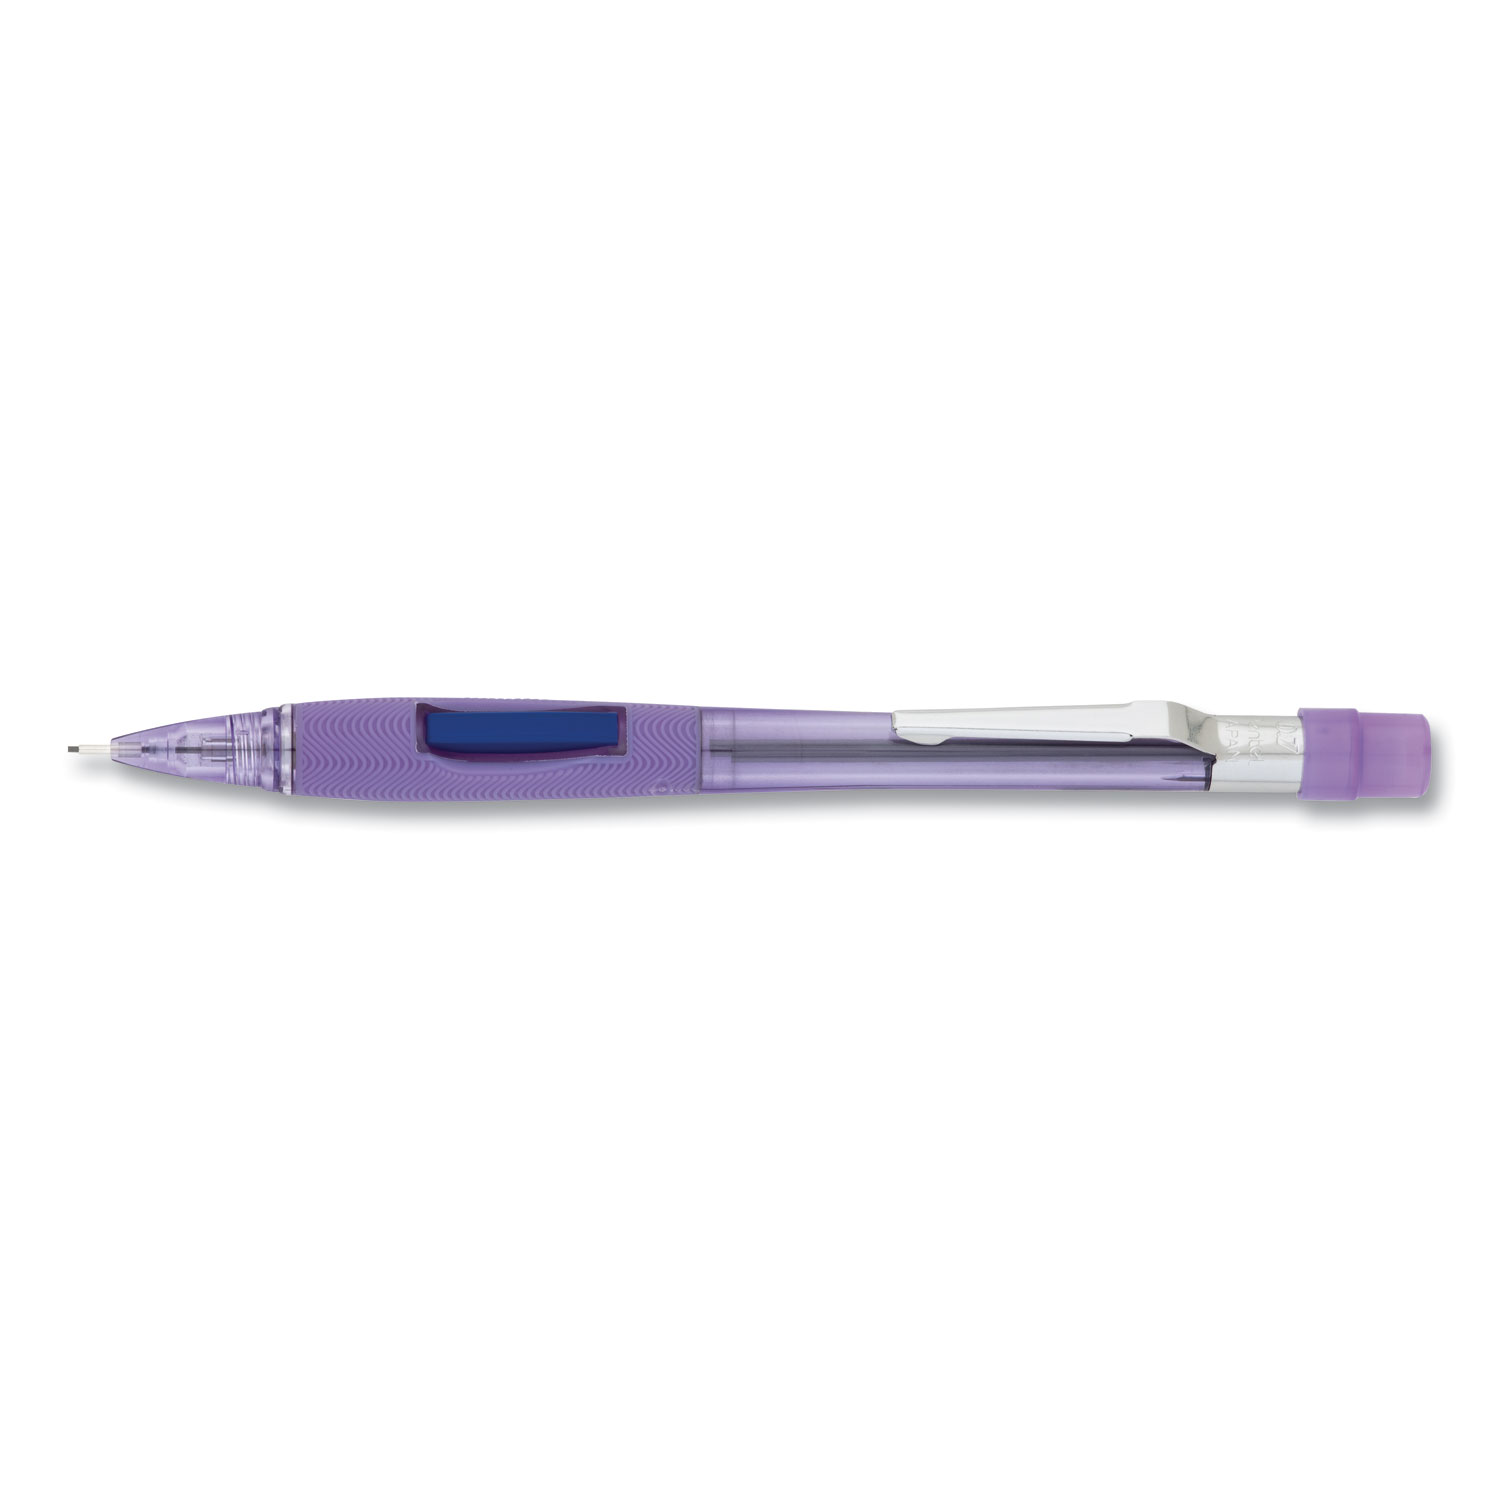  Pentel PD347TV Quicker Clicker Mechanical Pencil, 0.7 mm, HB (#2.5), Black Lead, Transparent Violet Barrel (PENPD347TV) 